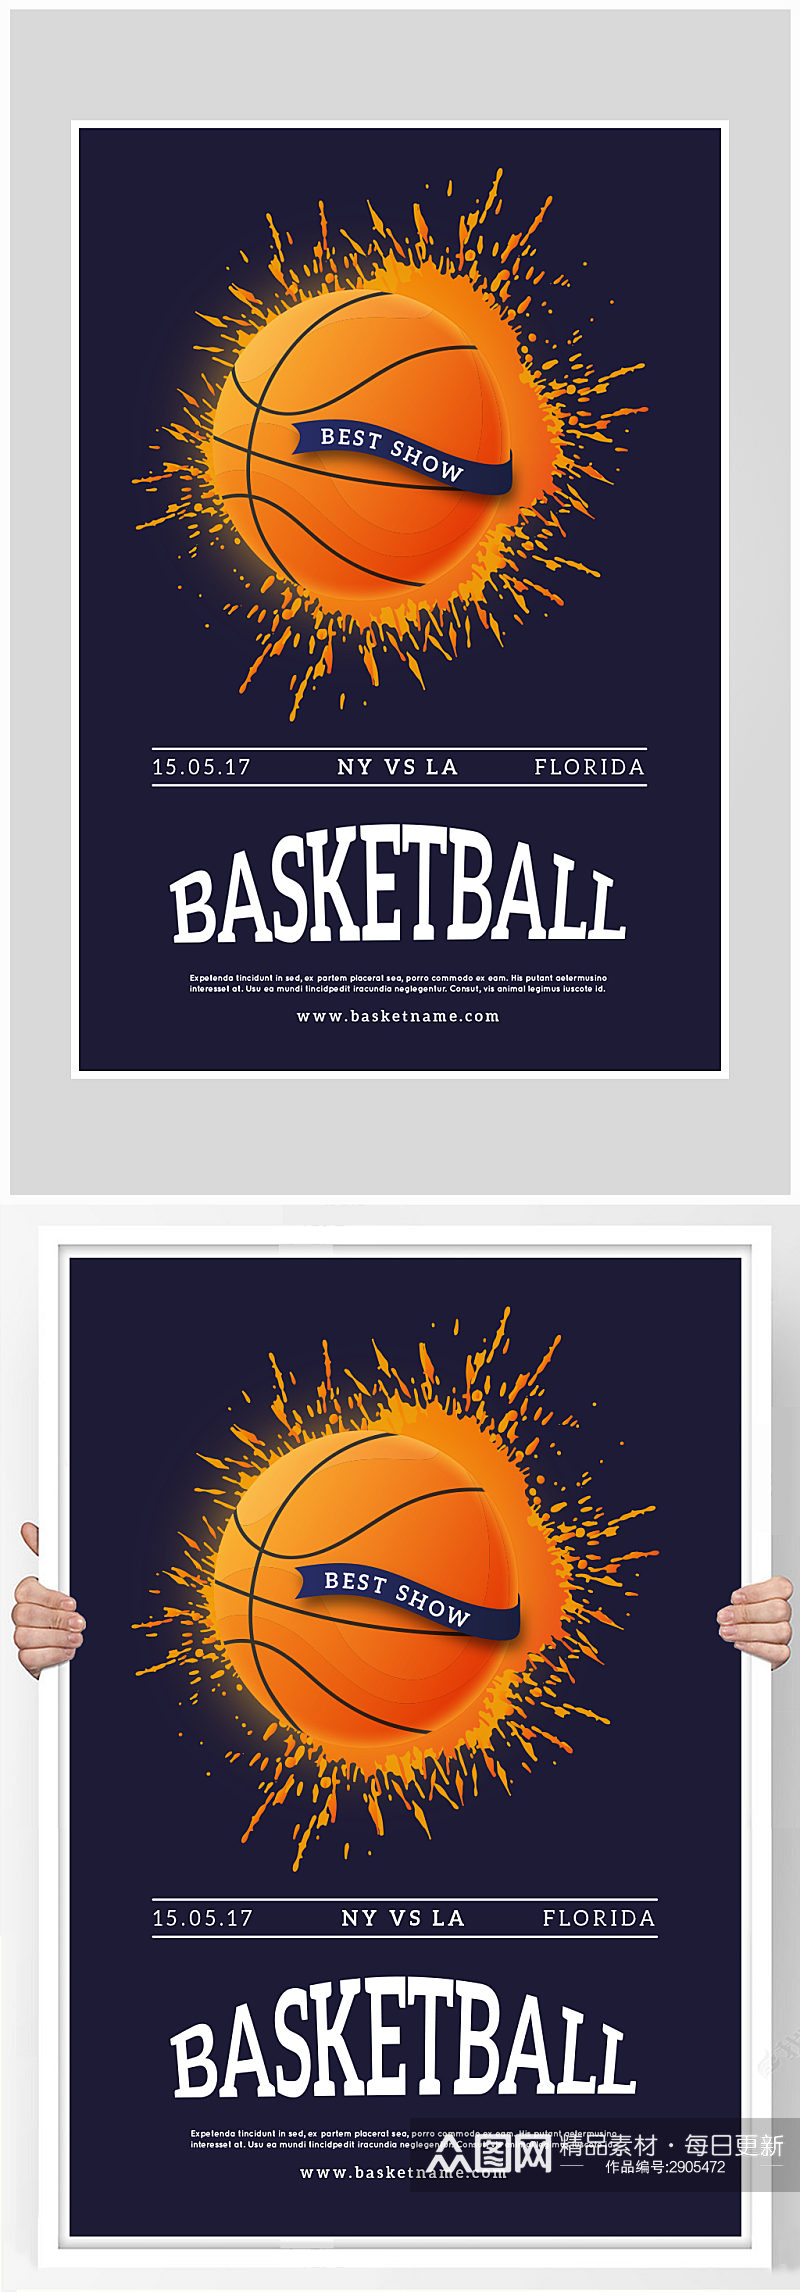 创意矢量篮球炫酷比赛海报设计素材